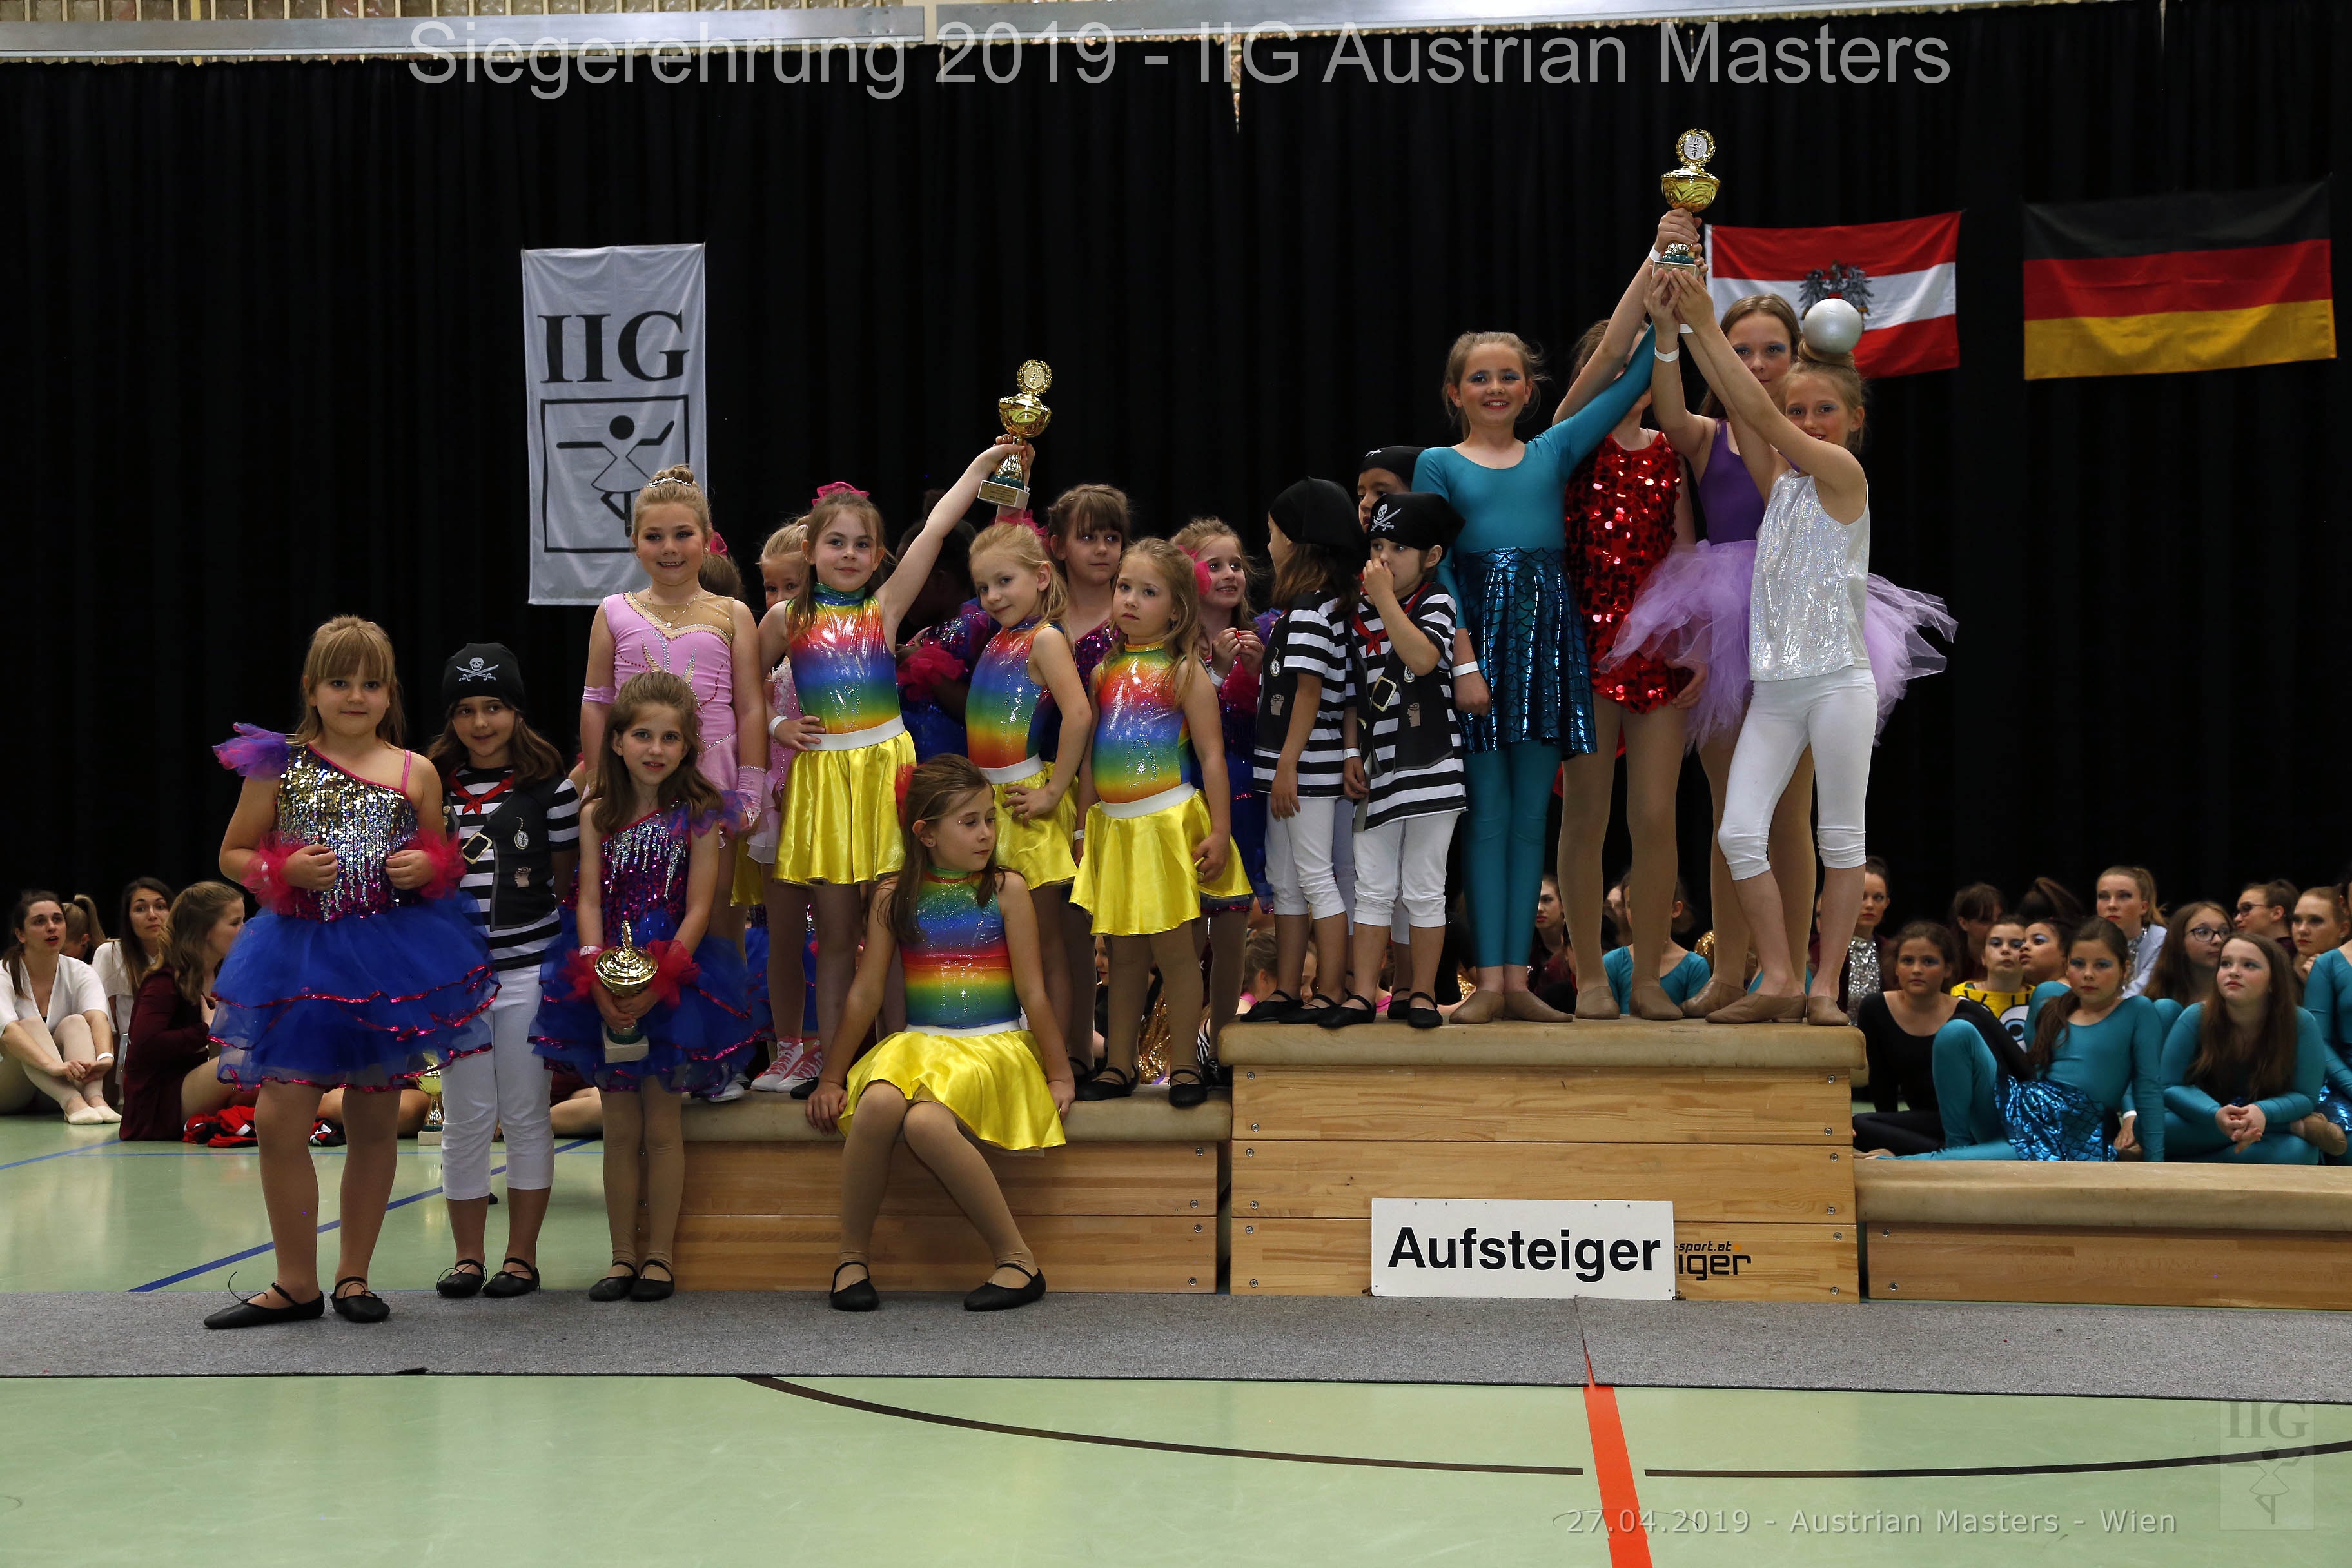 Siegerehrung - IIG Korneuburg 2019 - KIDDYS und JUGEND